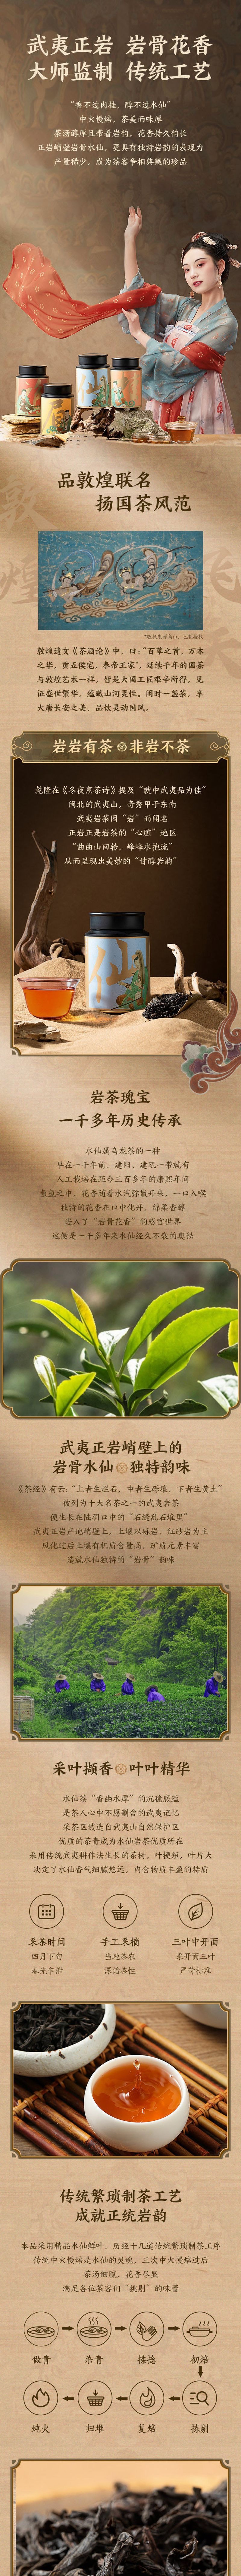 【中国直邮】网易严选 源自武夷正岩产区 特级水仙 茶叶 60克